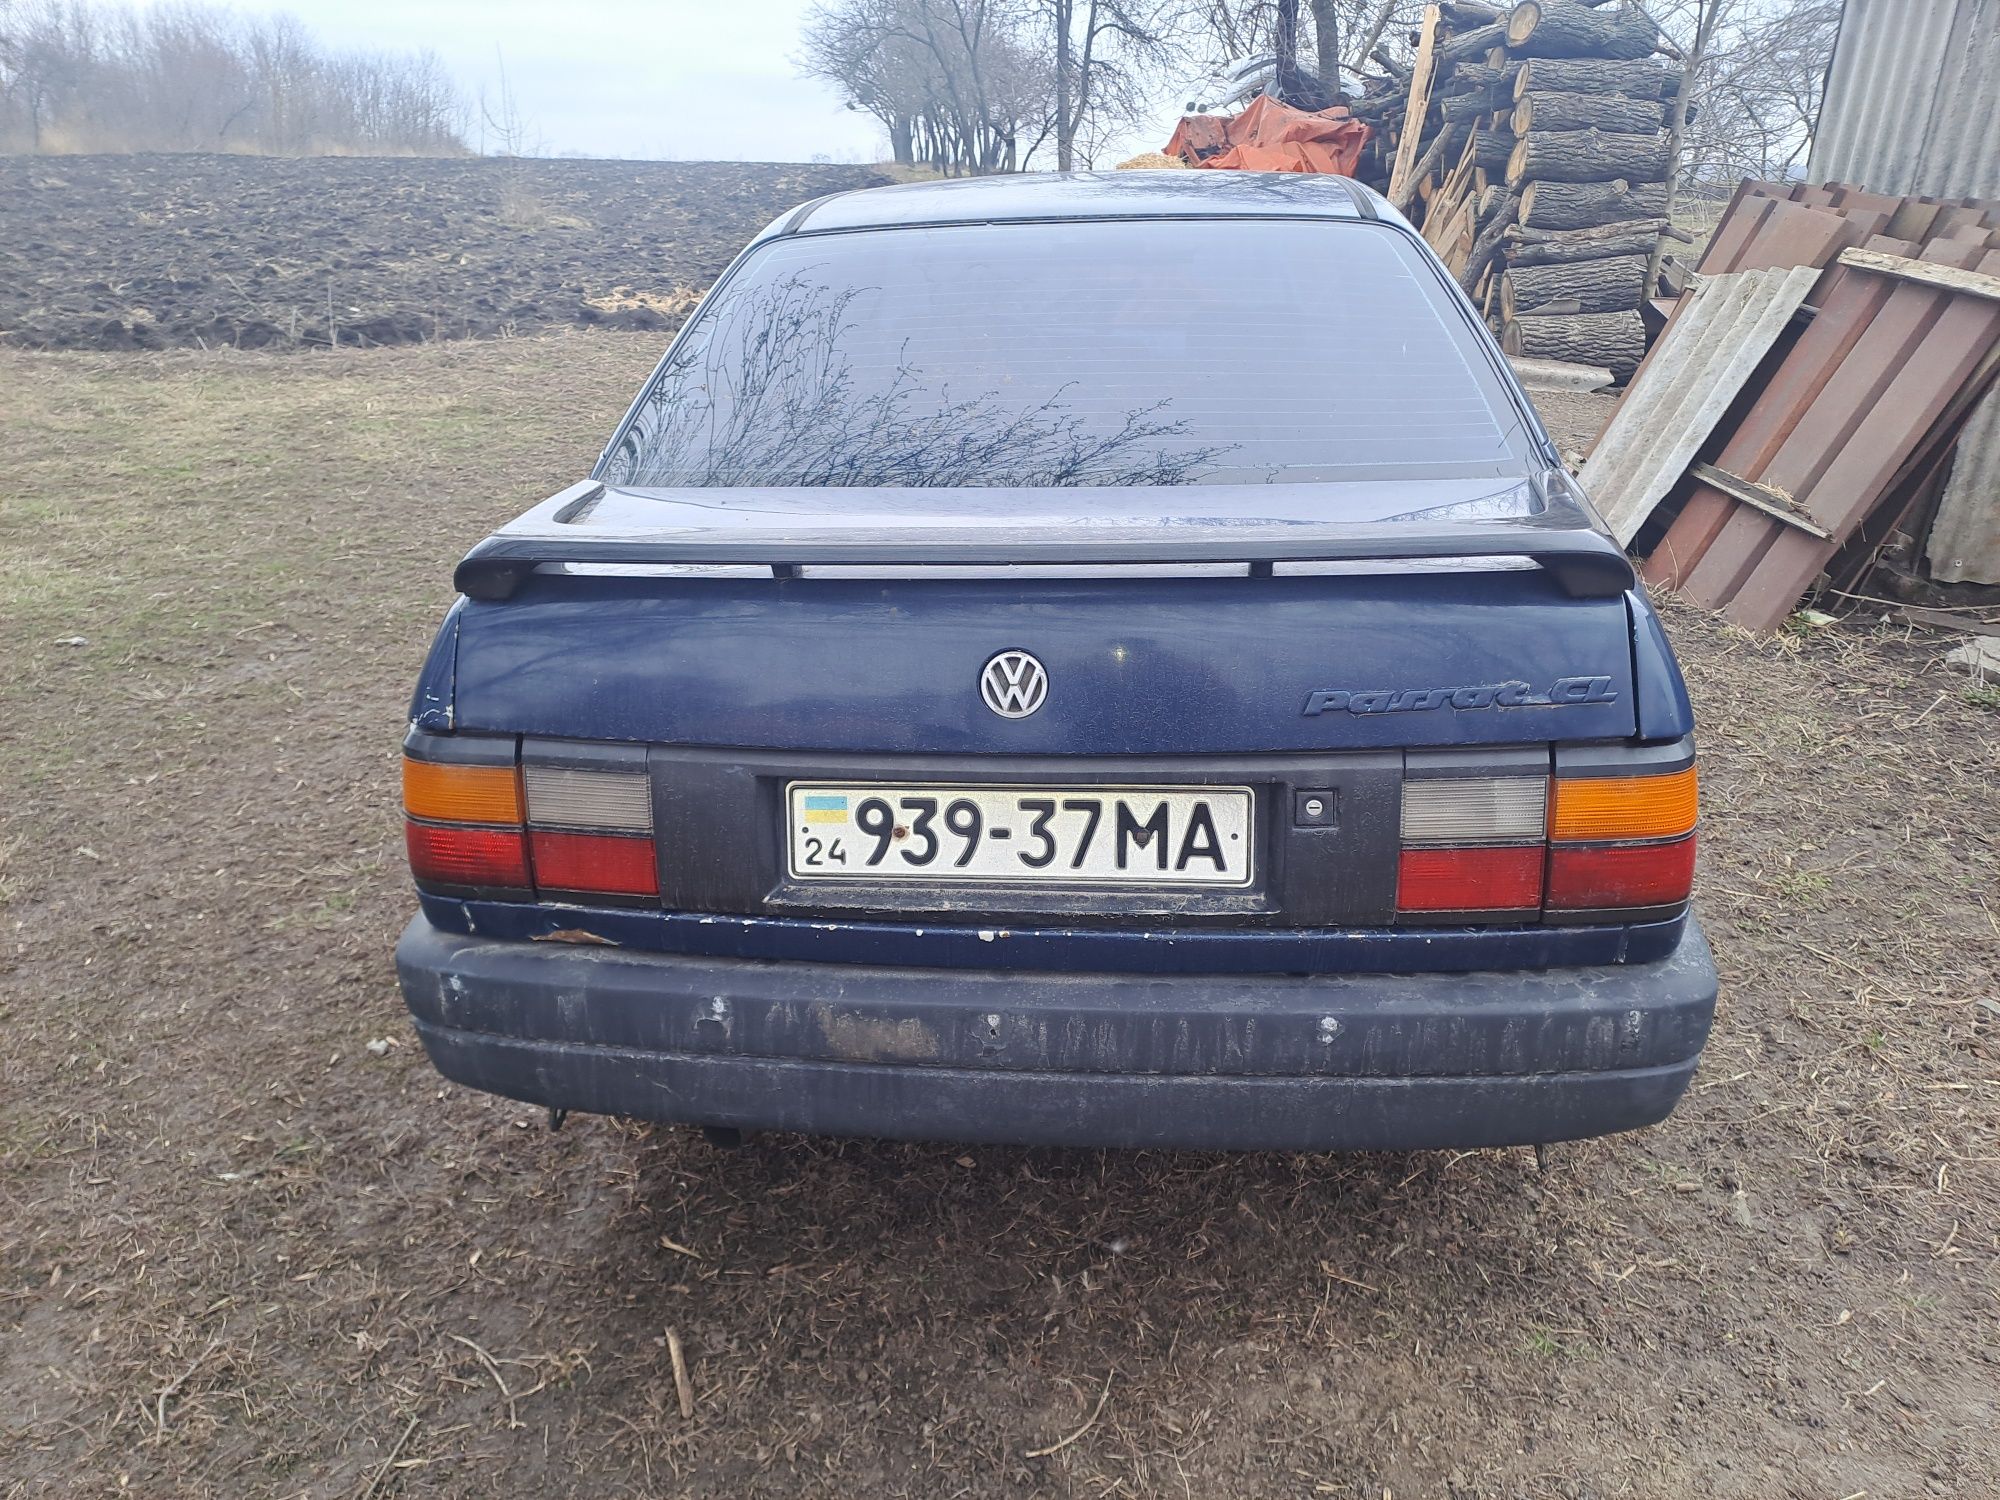 Автомобіль Пассат б3 1989г